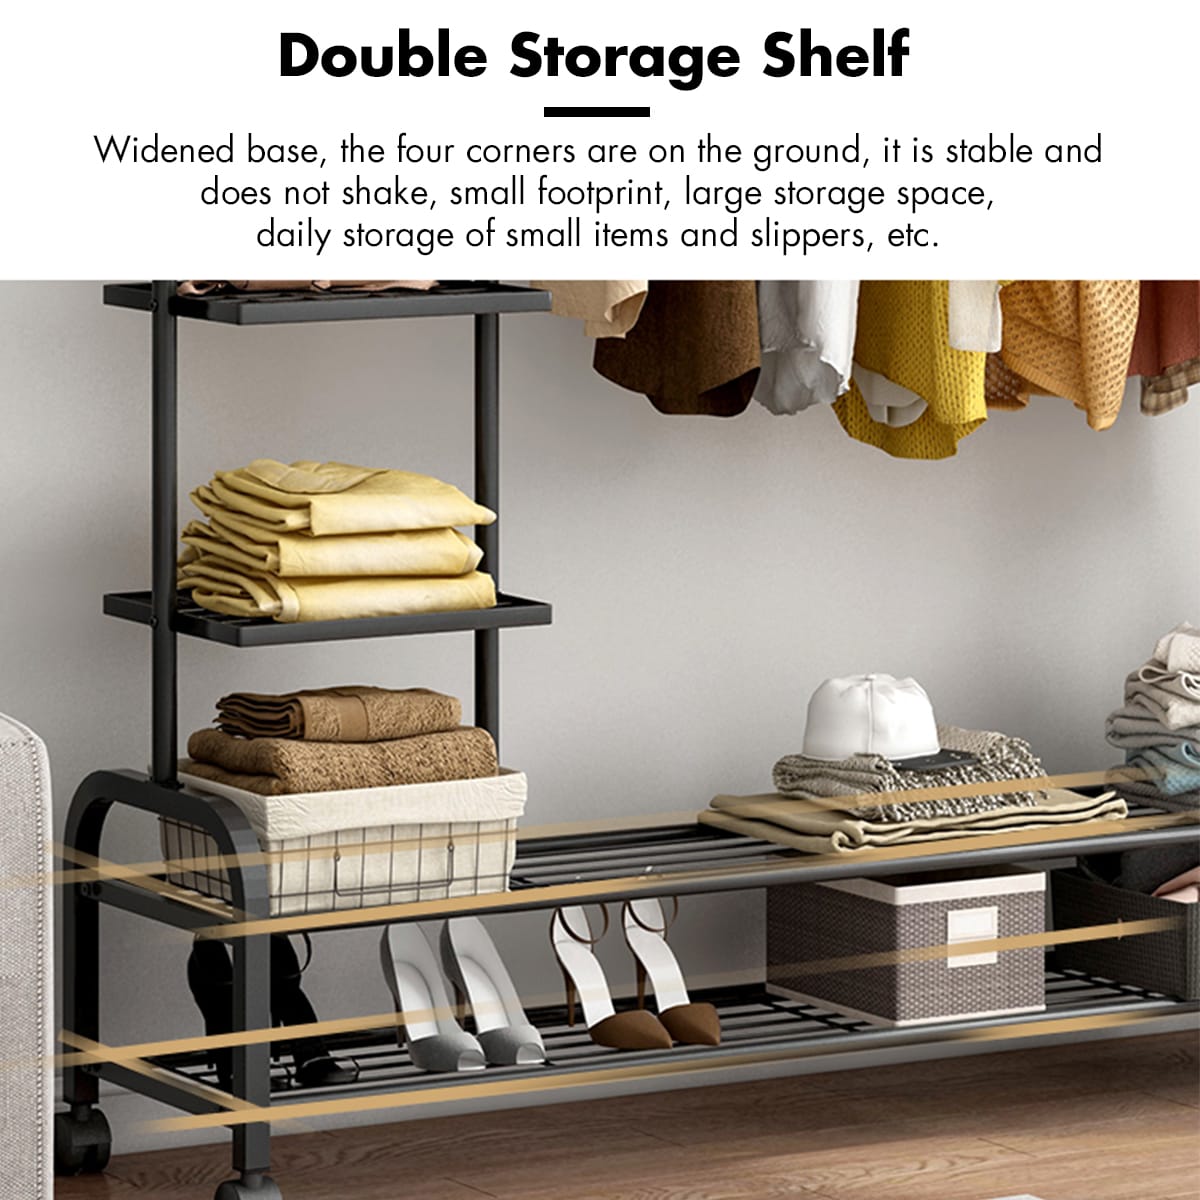 Double Storage Shelf Metal Cloth Organizer.